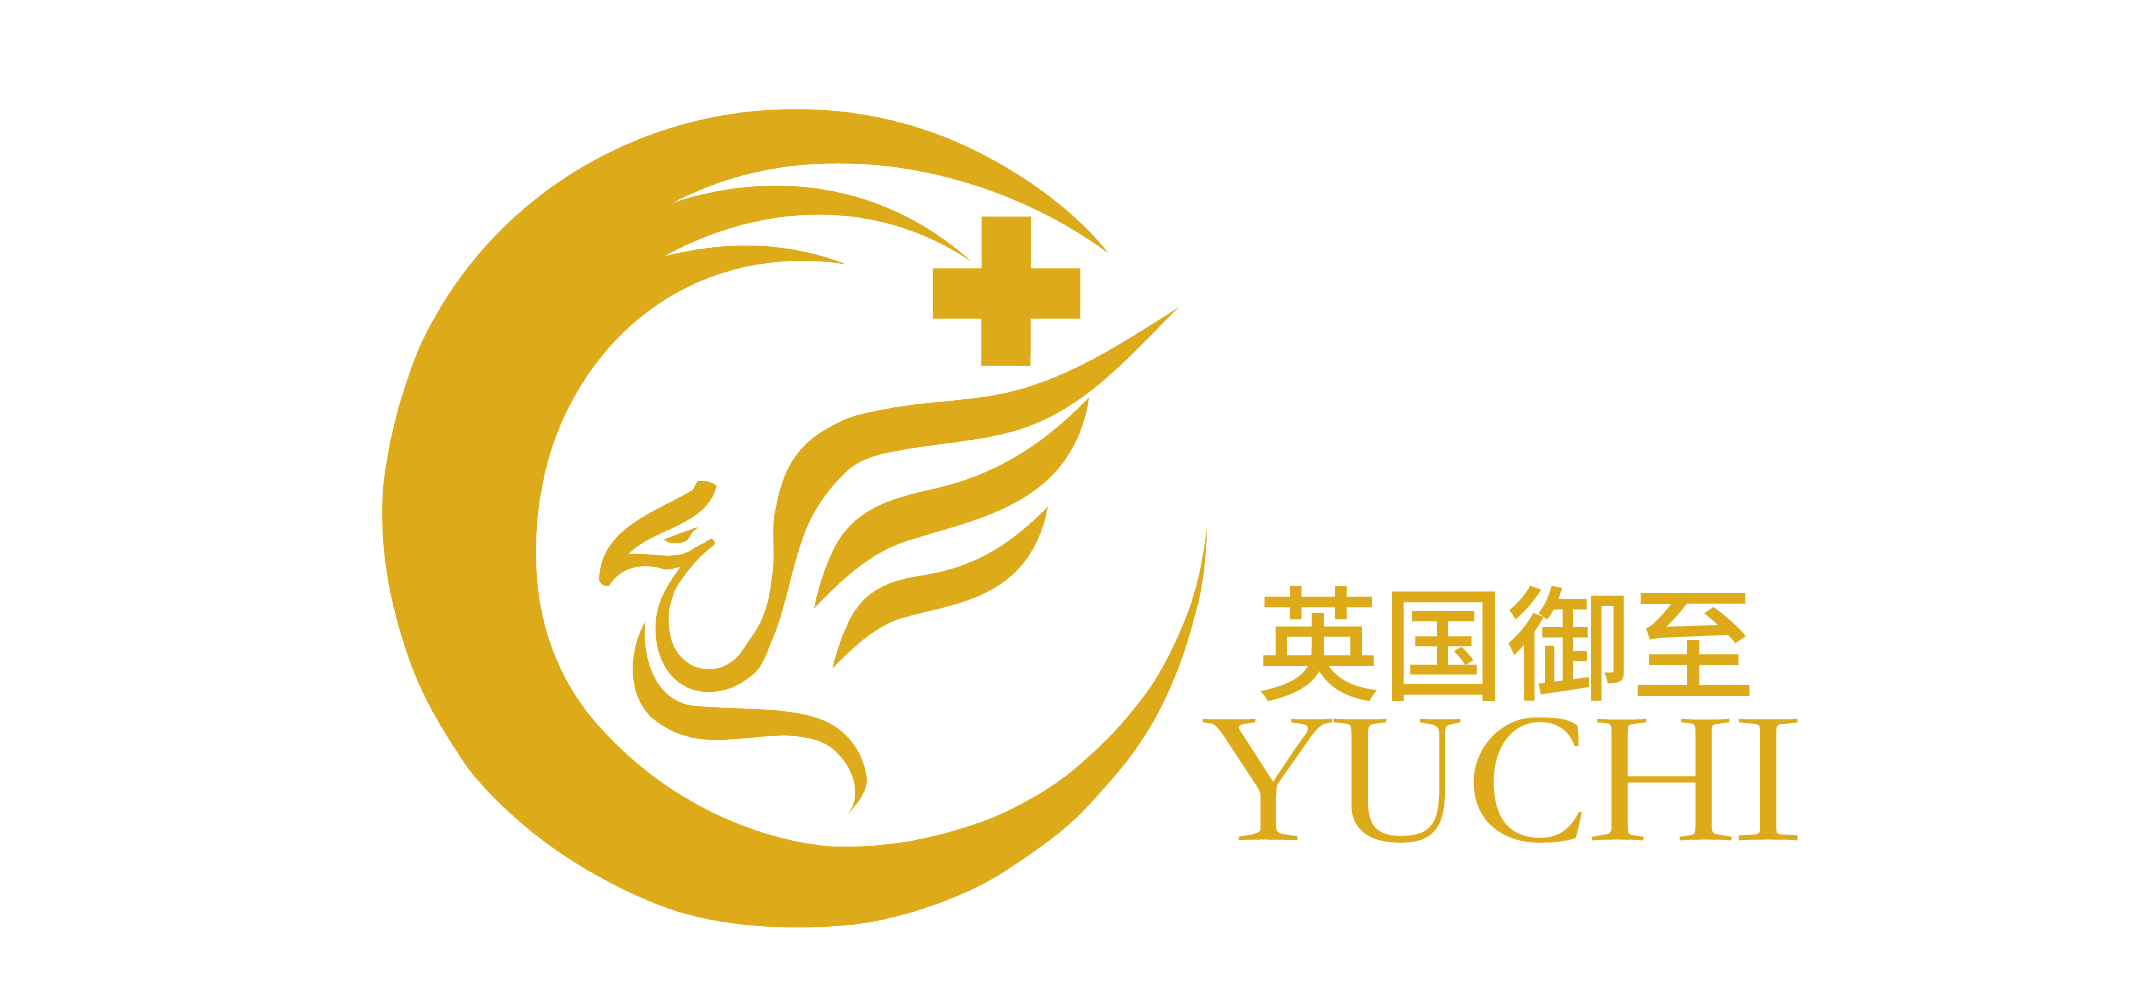 YuChi Medical